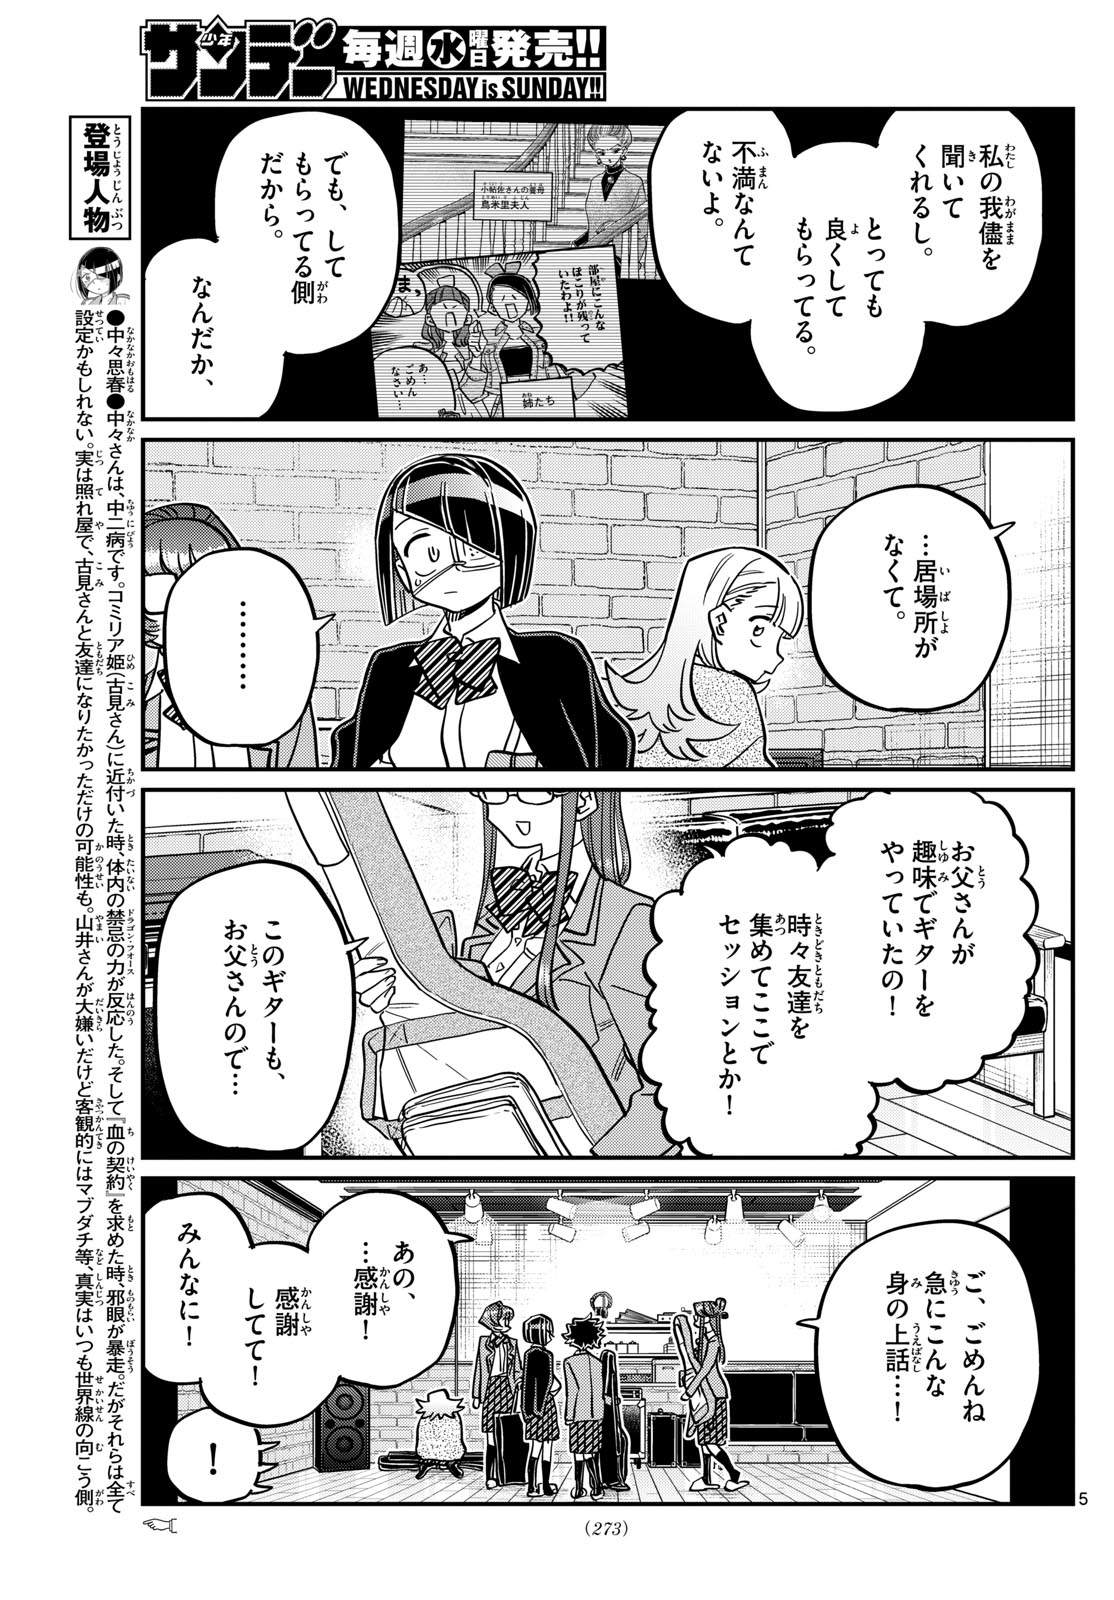 Komi-san wa Komyushou Desu - Chapter 453 - Page 5